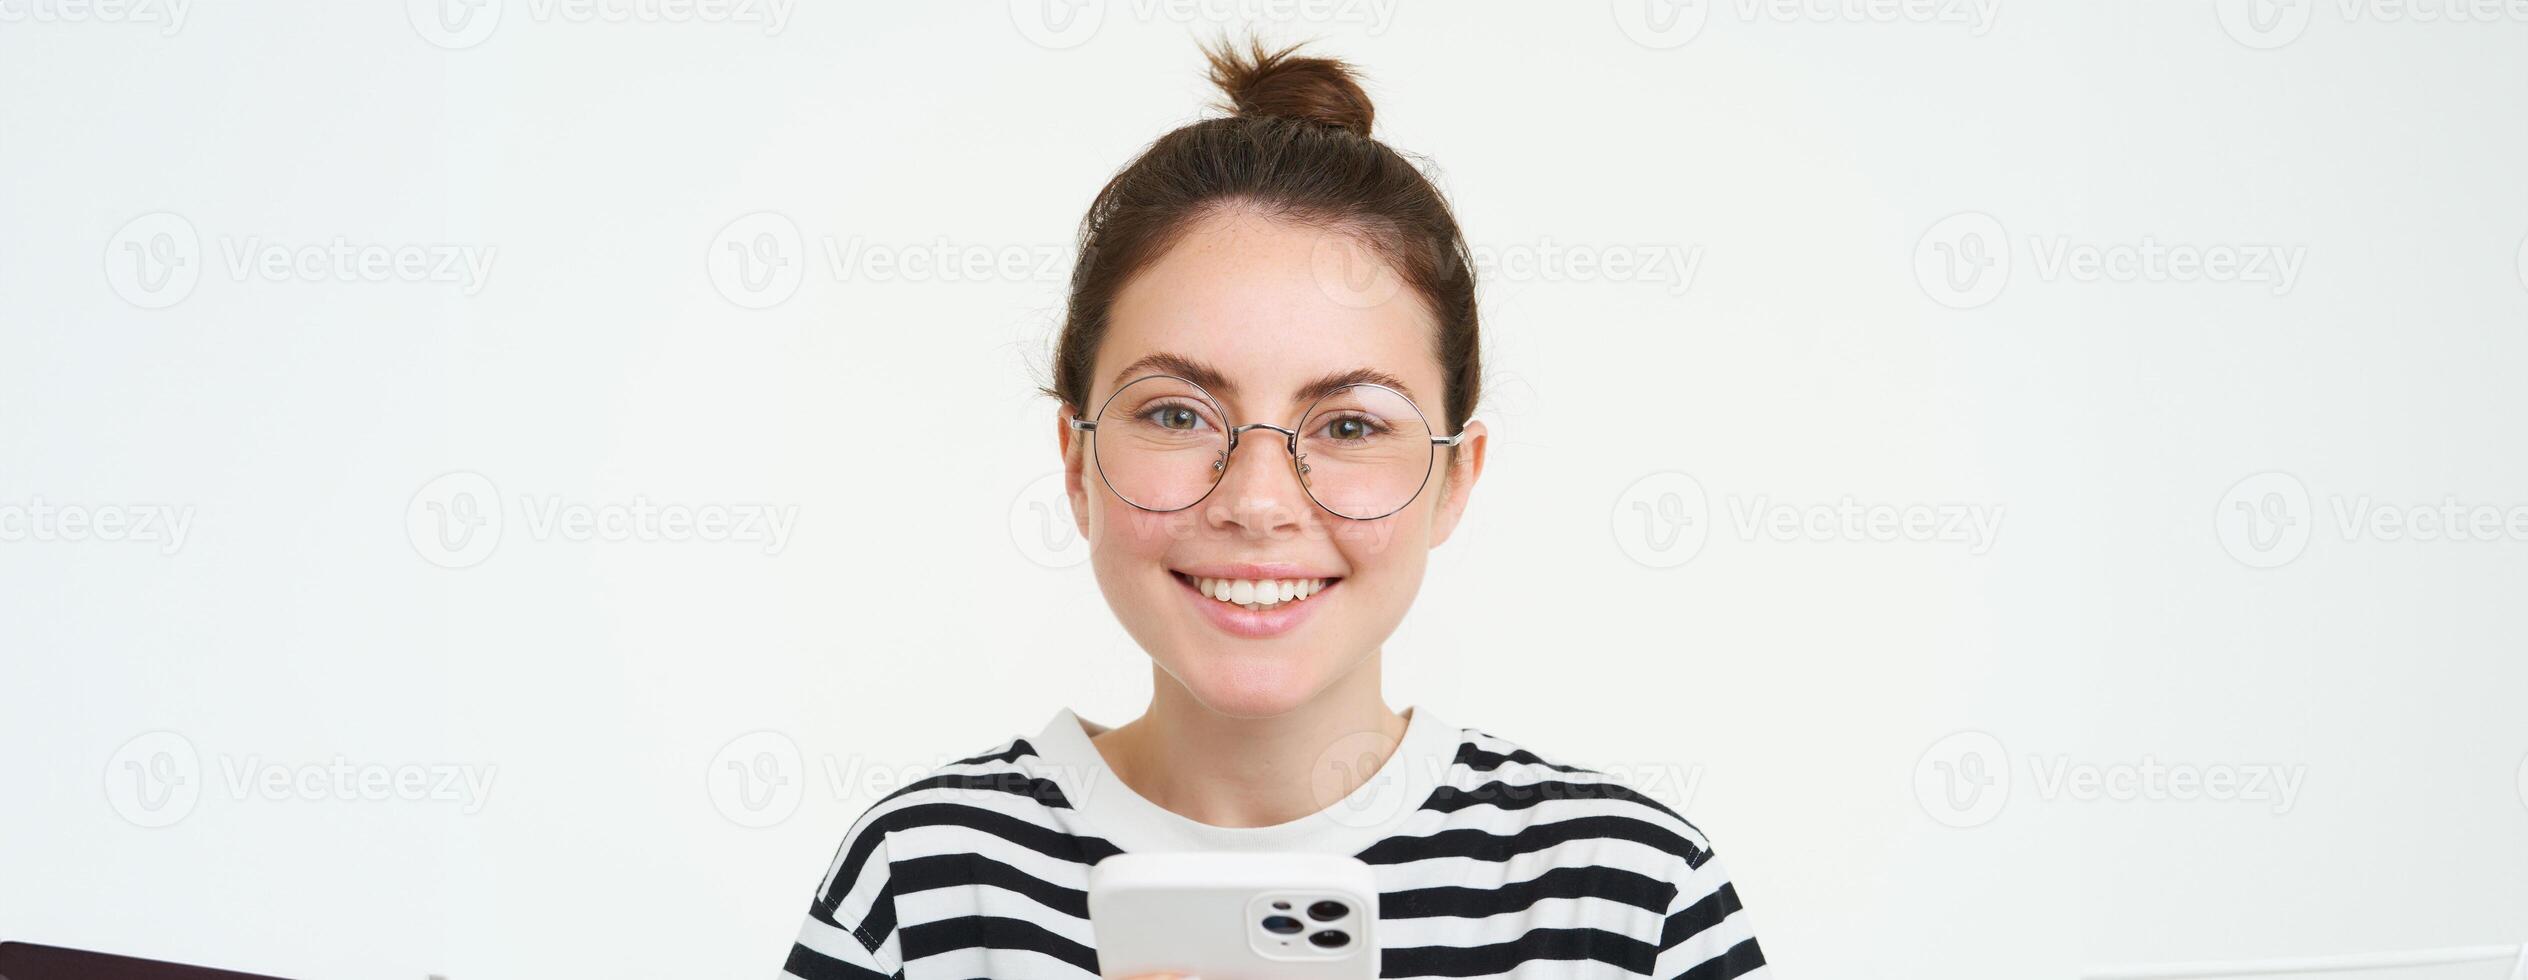 portret van mooi jong vrouw in brillen, Holding smartphone, gebruik makend van mobiel telefoon, online boodschappen doen in sollicitatie, staand over- wit achtergrond foto